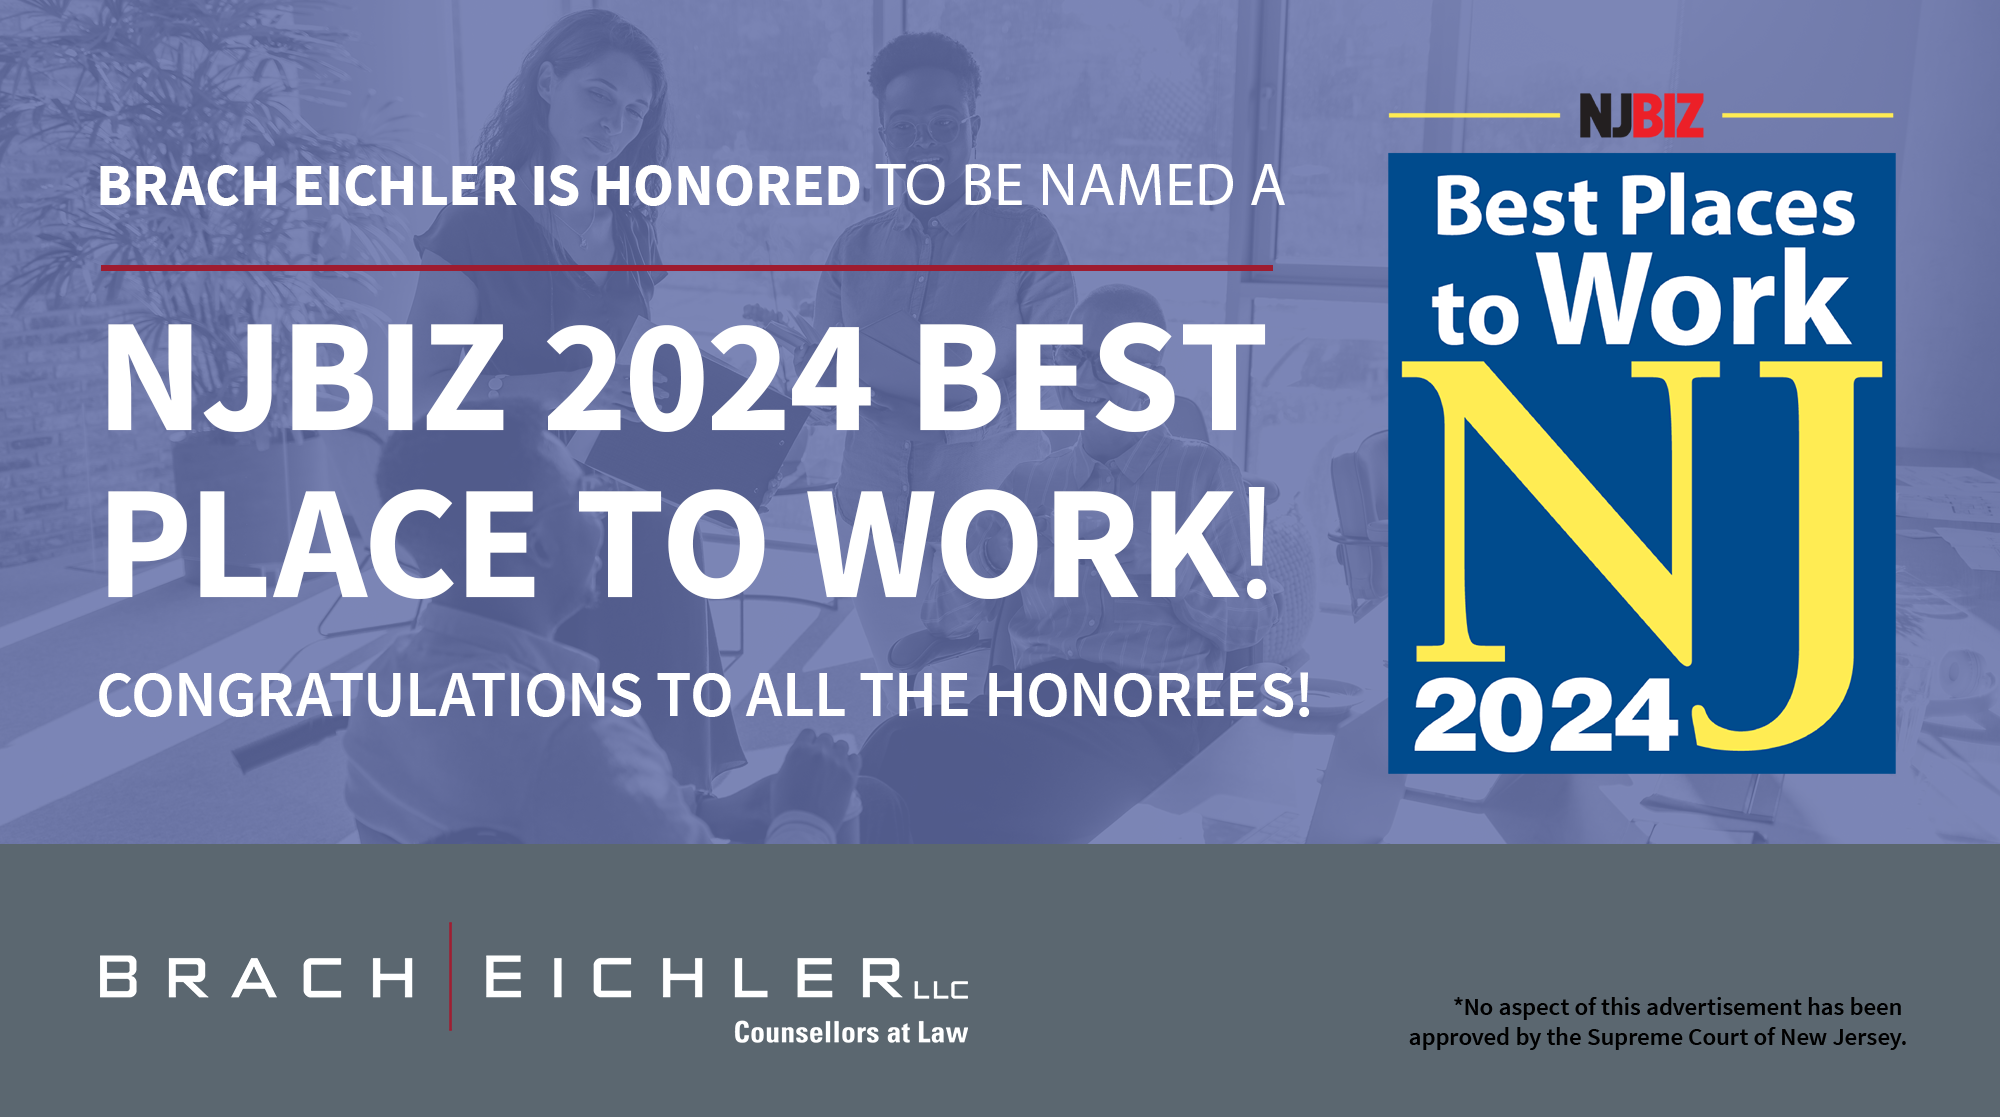 NJBIZ Best Places To Work 2024 - Brach Eichler